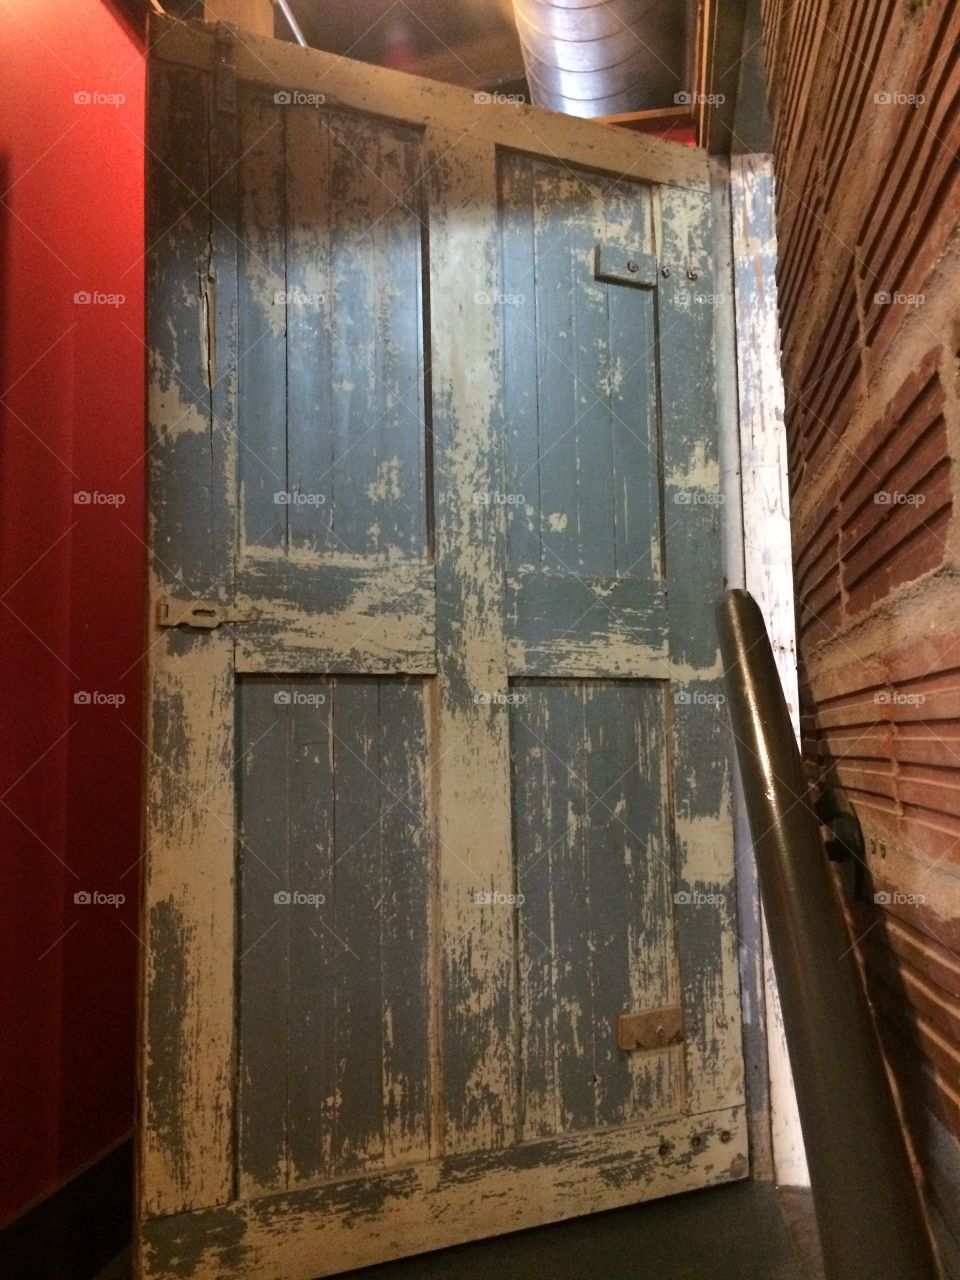 Blue
Door
Indoors
Antique
Wood